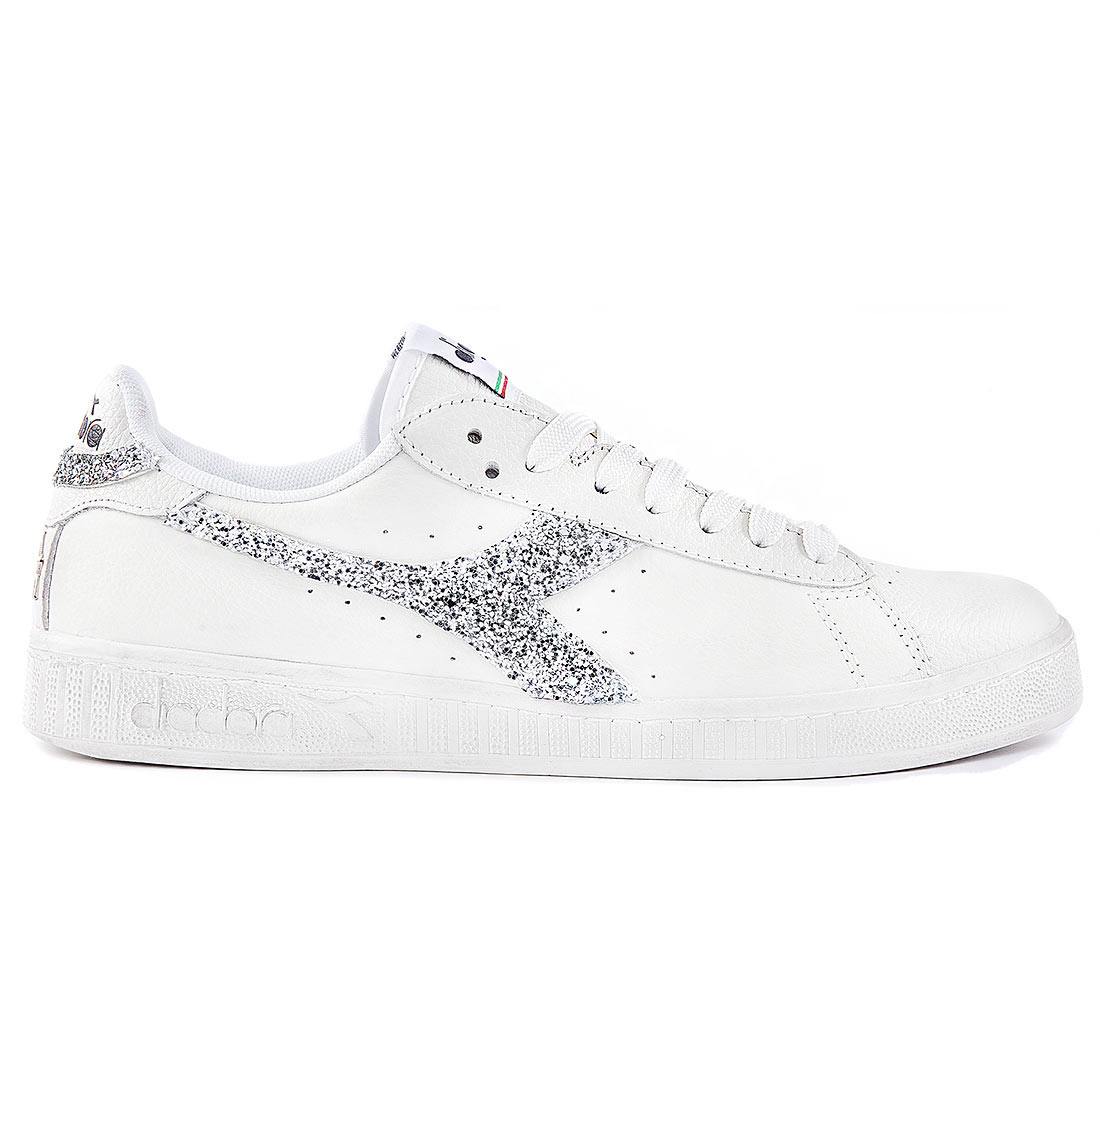 Scarpe Diadora modello Game Low glitterate con glitter argento con brillantini scarpe personalizzate da Racoon-LAB